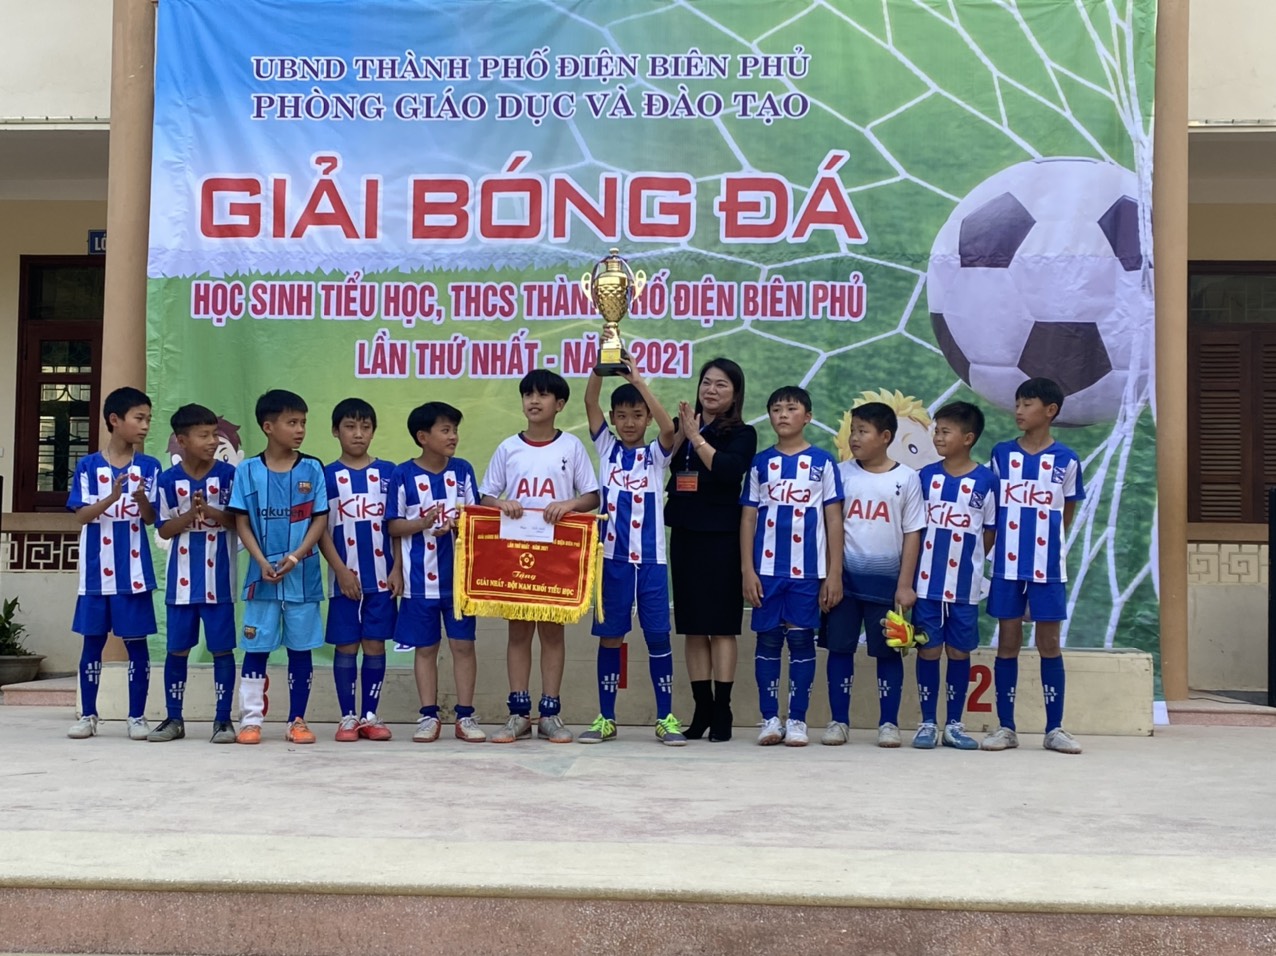 Trường Tiểu học Him Lam tham gia giải Bóng đá học sinh TH - THCS thành phố Điện Biên Phủ lần thứ nhất – Năm 2021